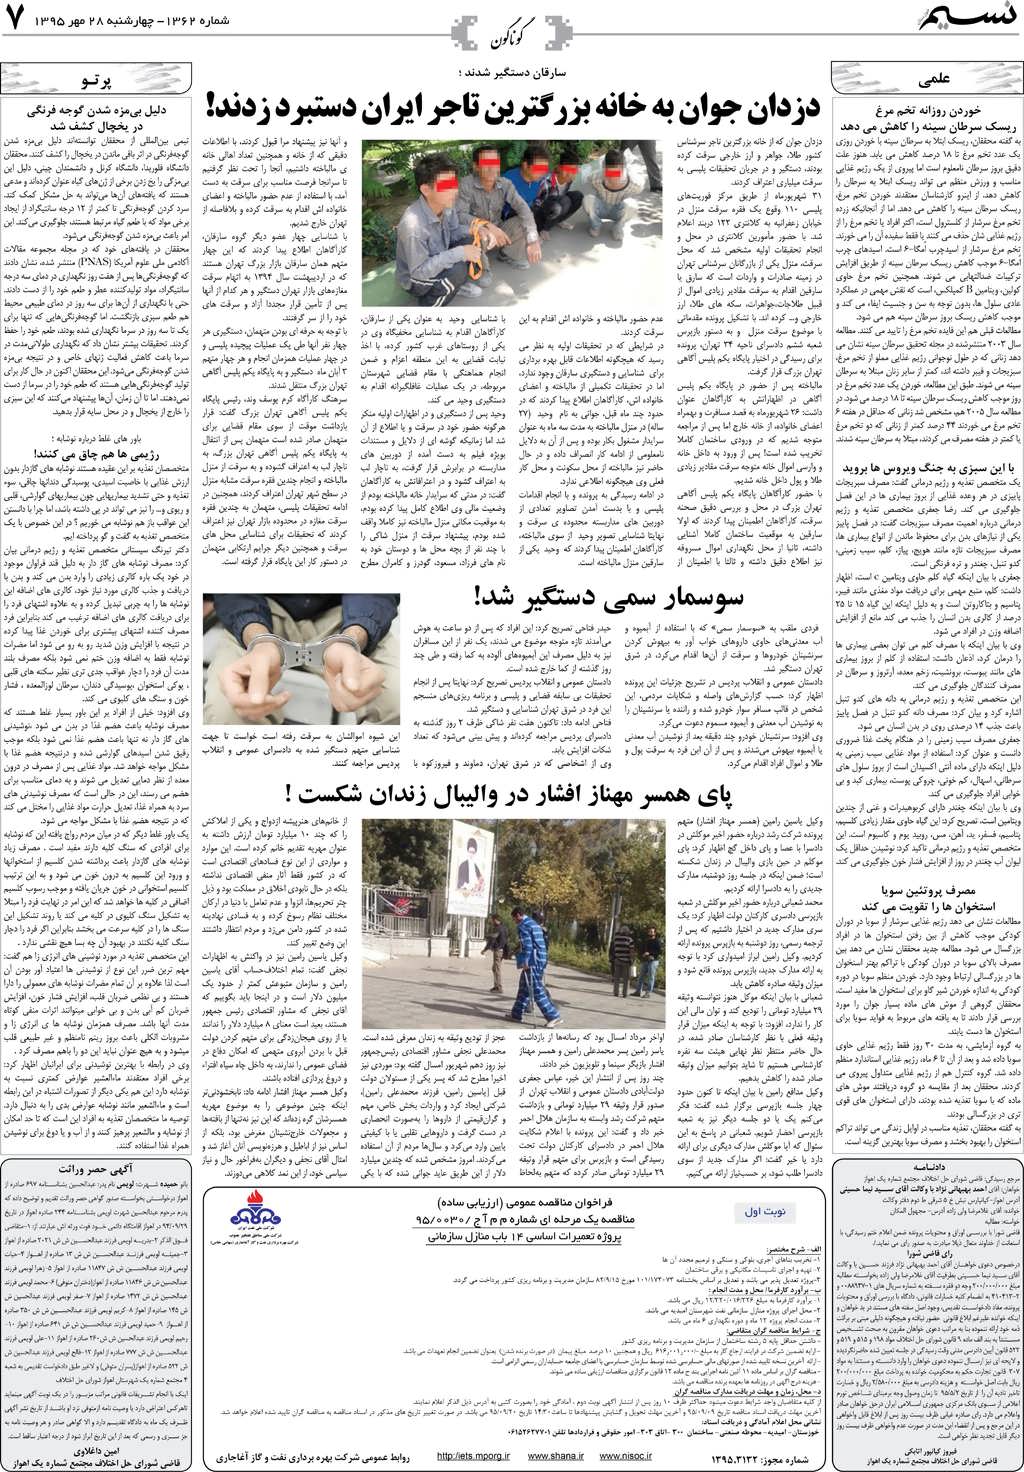 صفحه گوناگون روزنامه نسیم شماره 1362